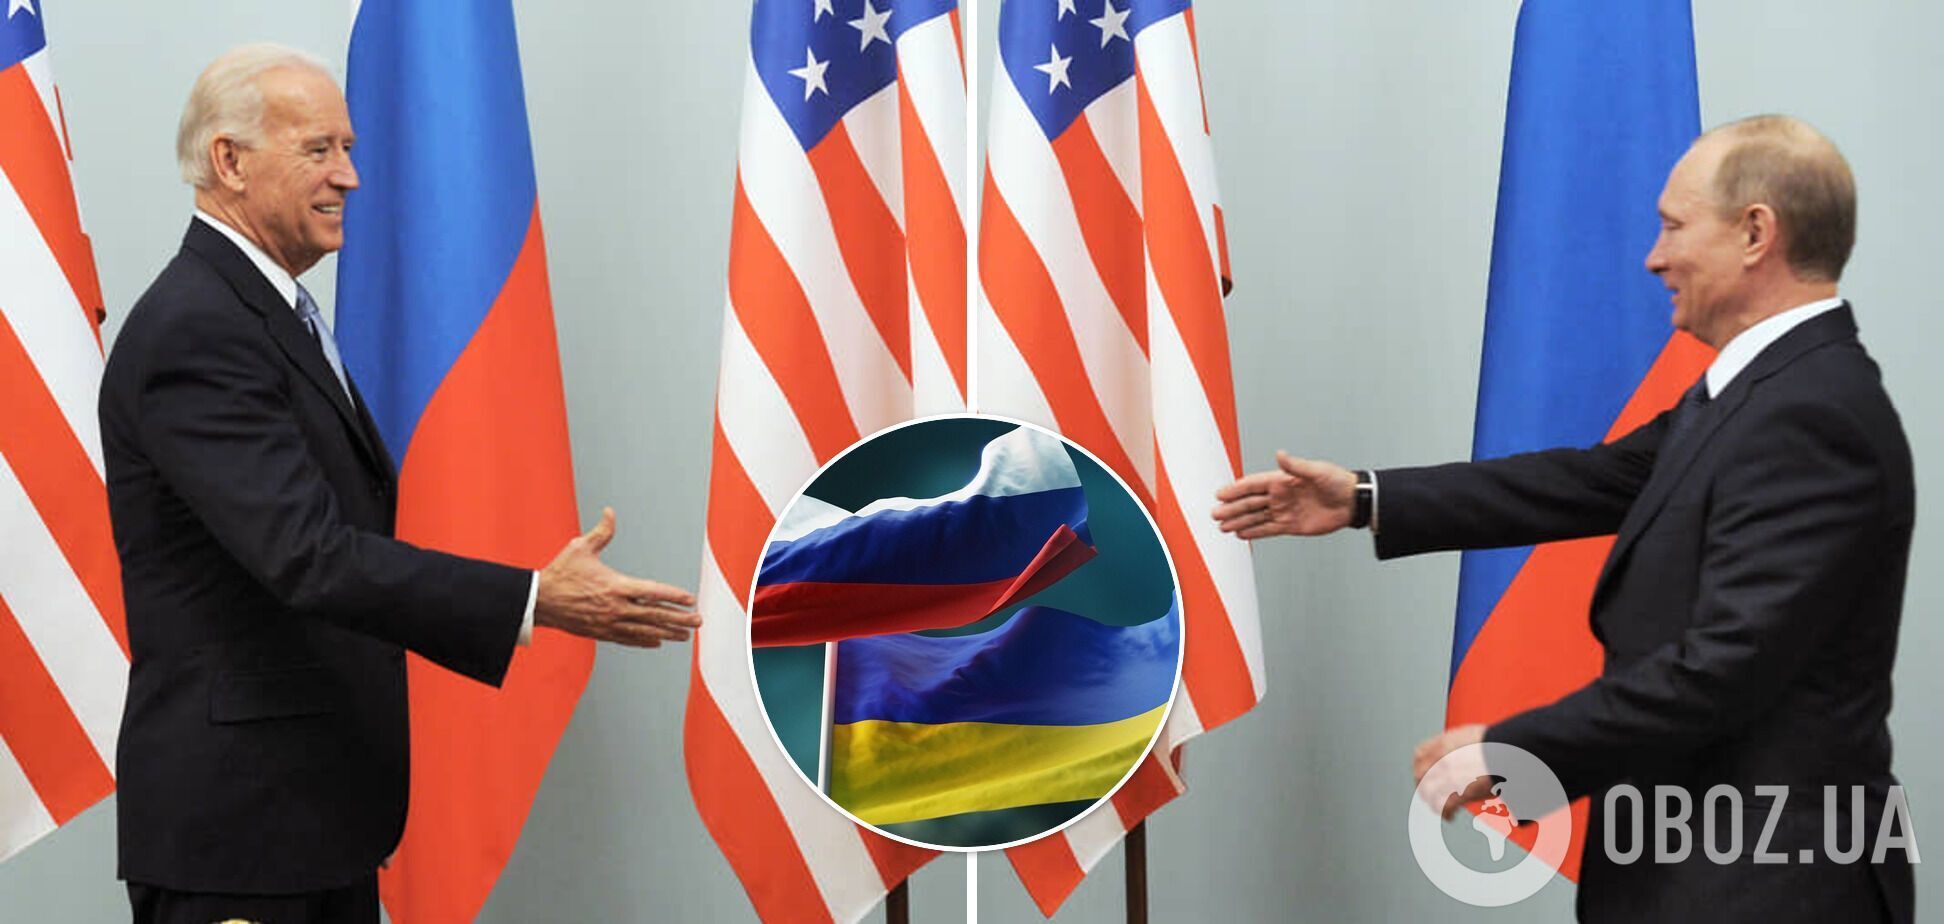 Чиновники из США предположили, что дипломатические переговоры с РФ на тему Украины в январе могут ослабить нарастающую напряженность